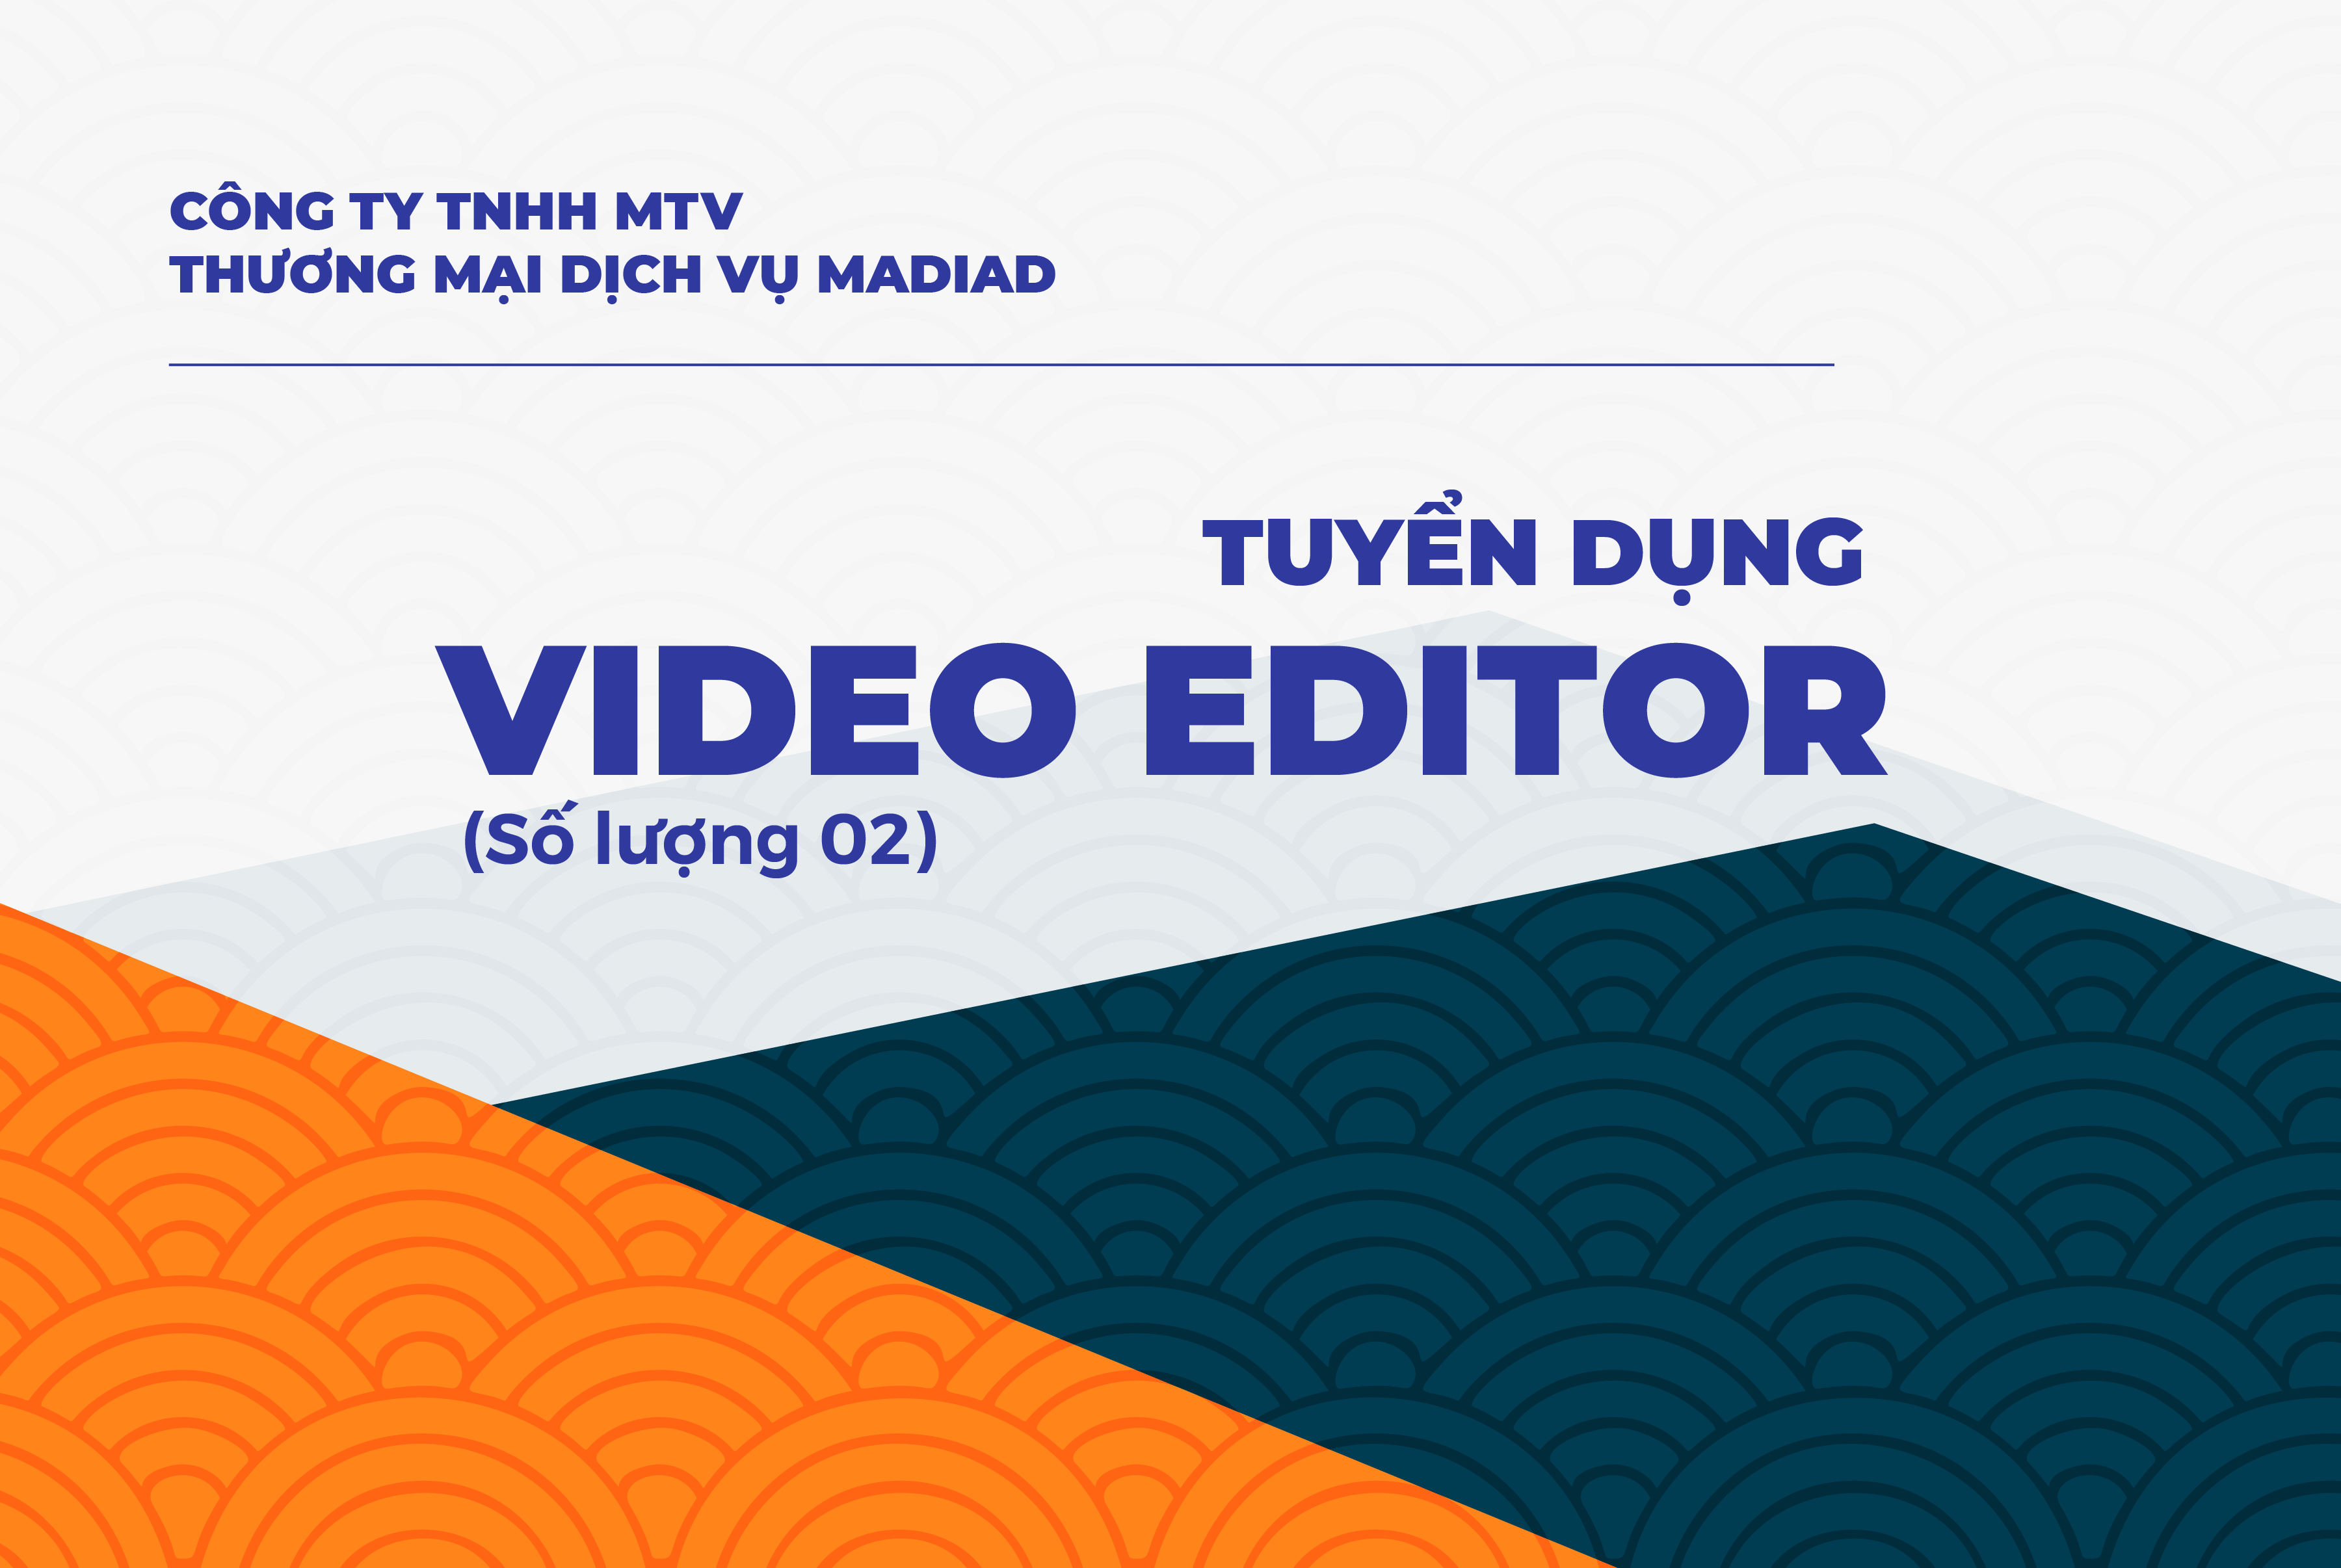 [CẦN THƠ] CÔNG TY TNHH MTV THƯƠNG MẠI DỊCH VỤ MADIAD TUYỂN DỤNG VIDEO EDITOR (SỐ LƯỢNG 02)